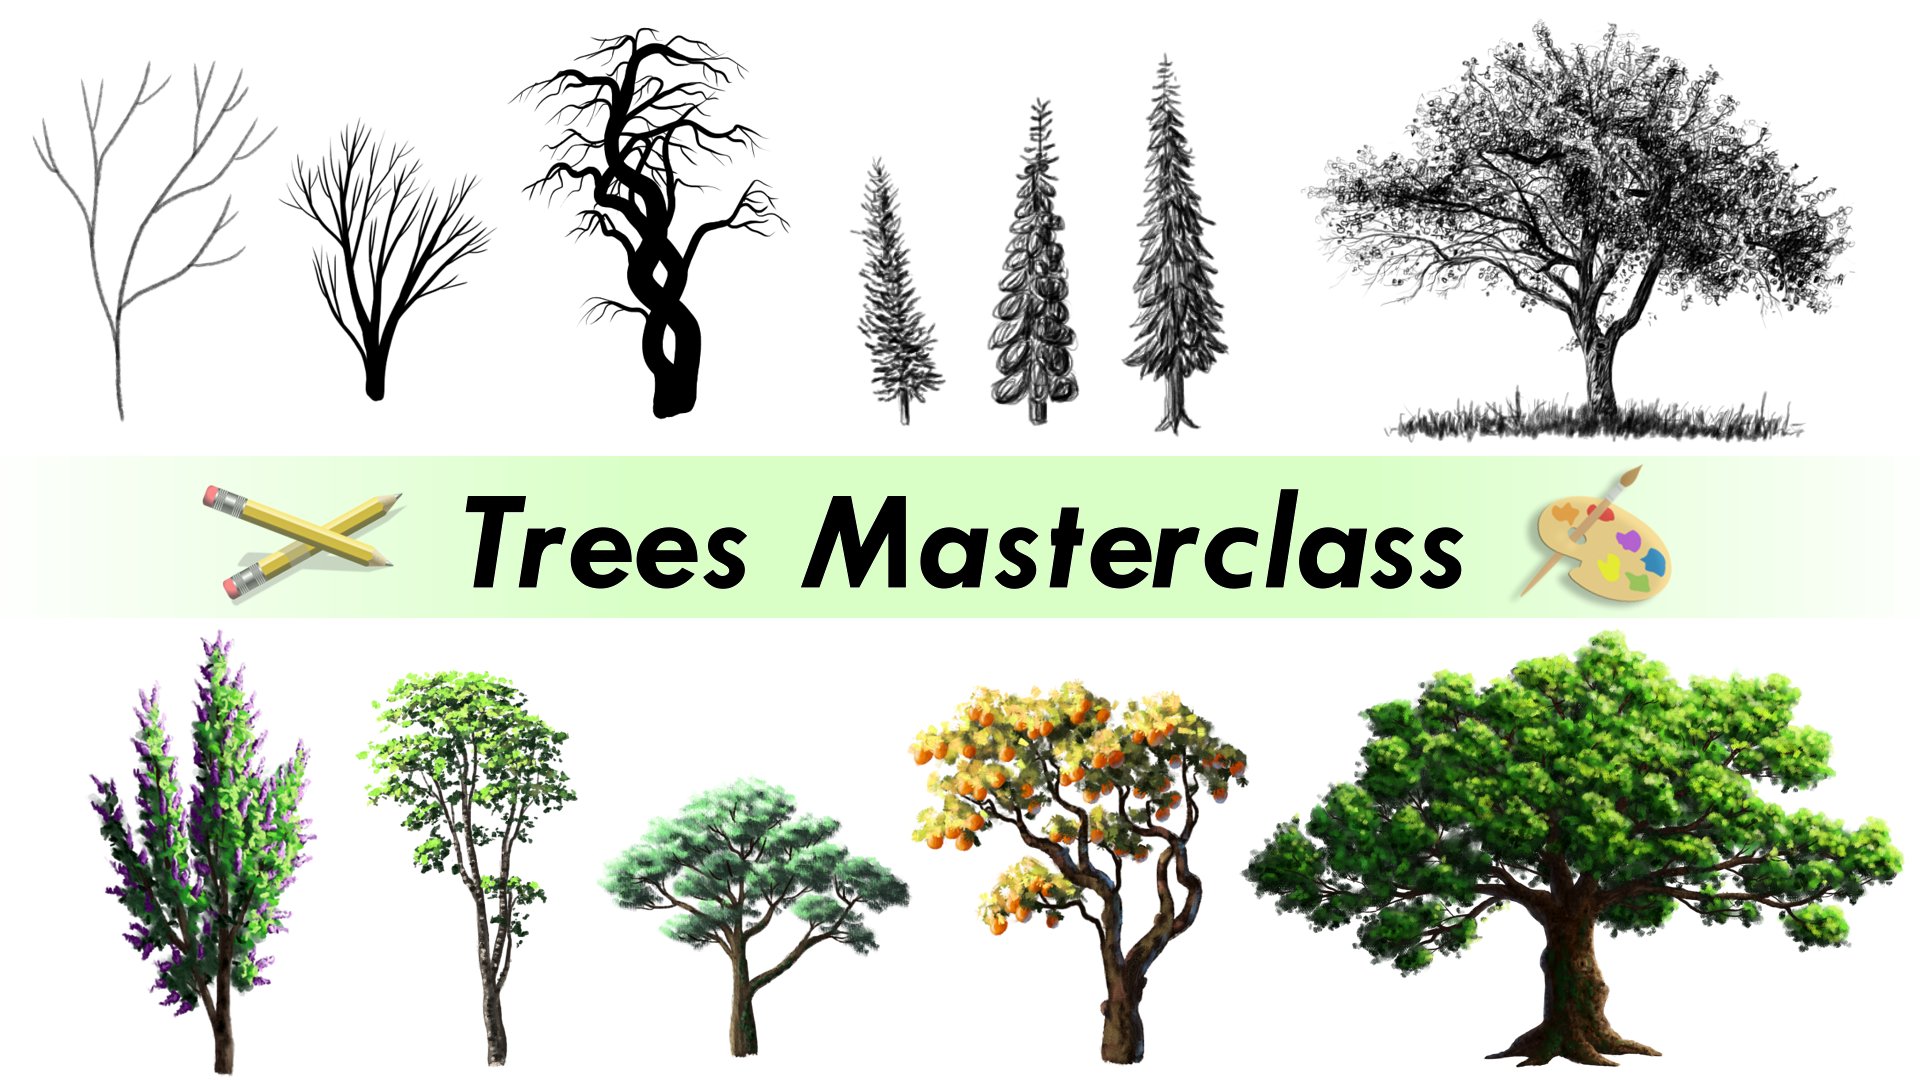 آموزش طراحی و رنگ آمیزی هر درخت - مسترکلاس کامل با تمرین